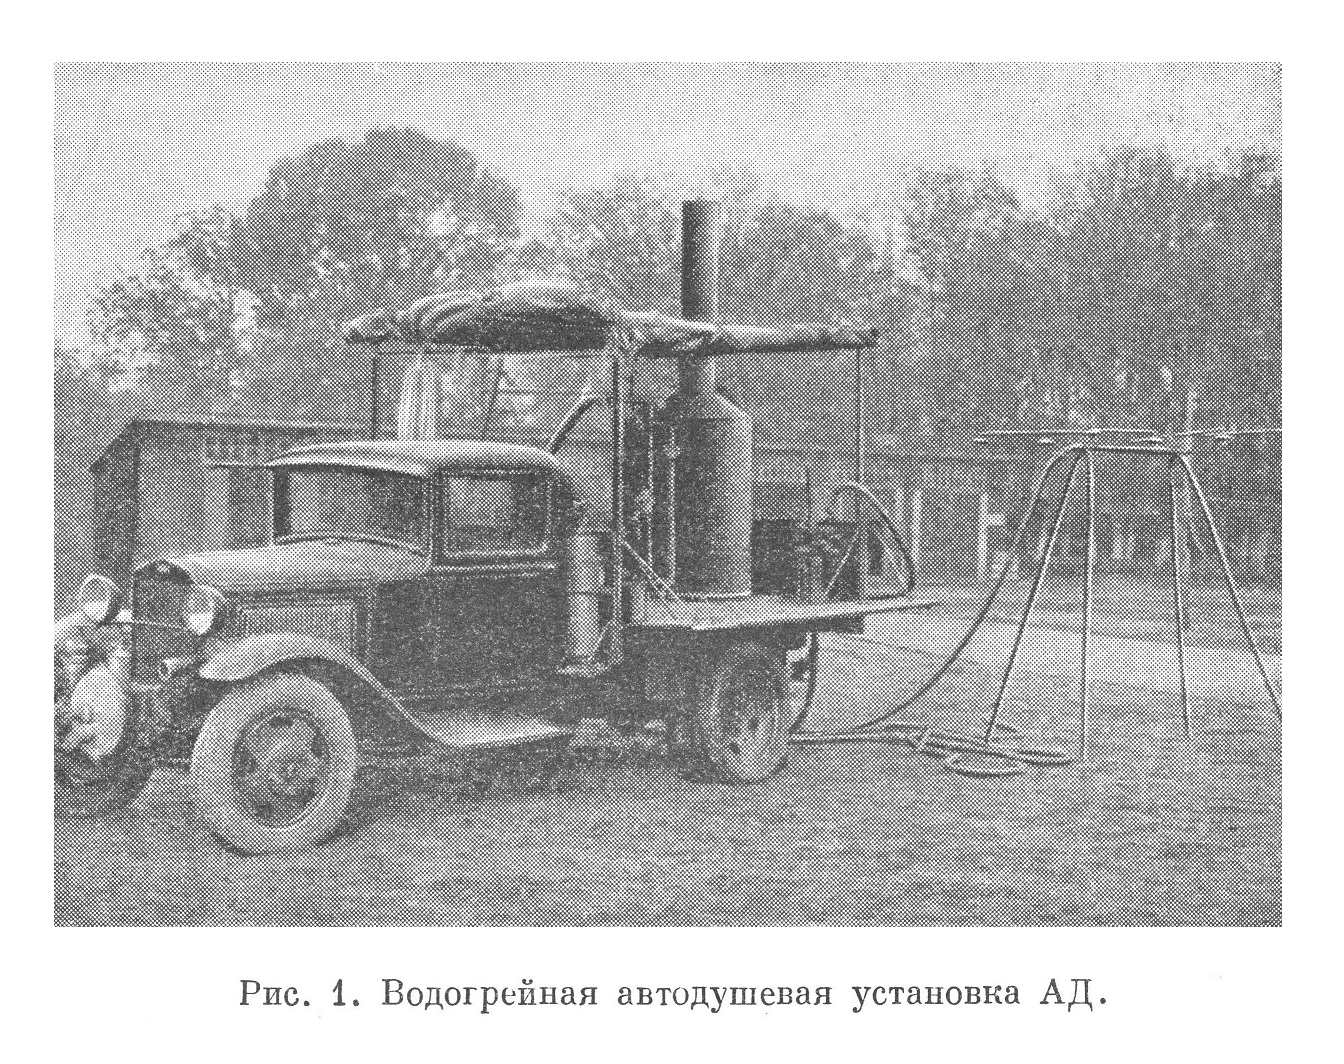 Водогрейная автодушевая установка АД.